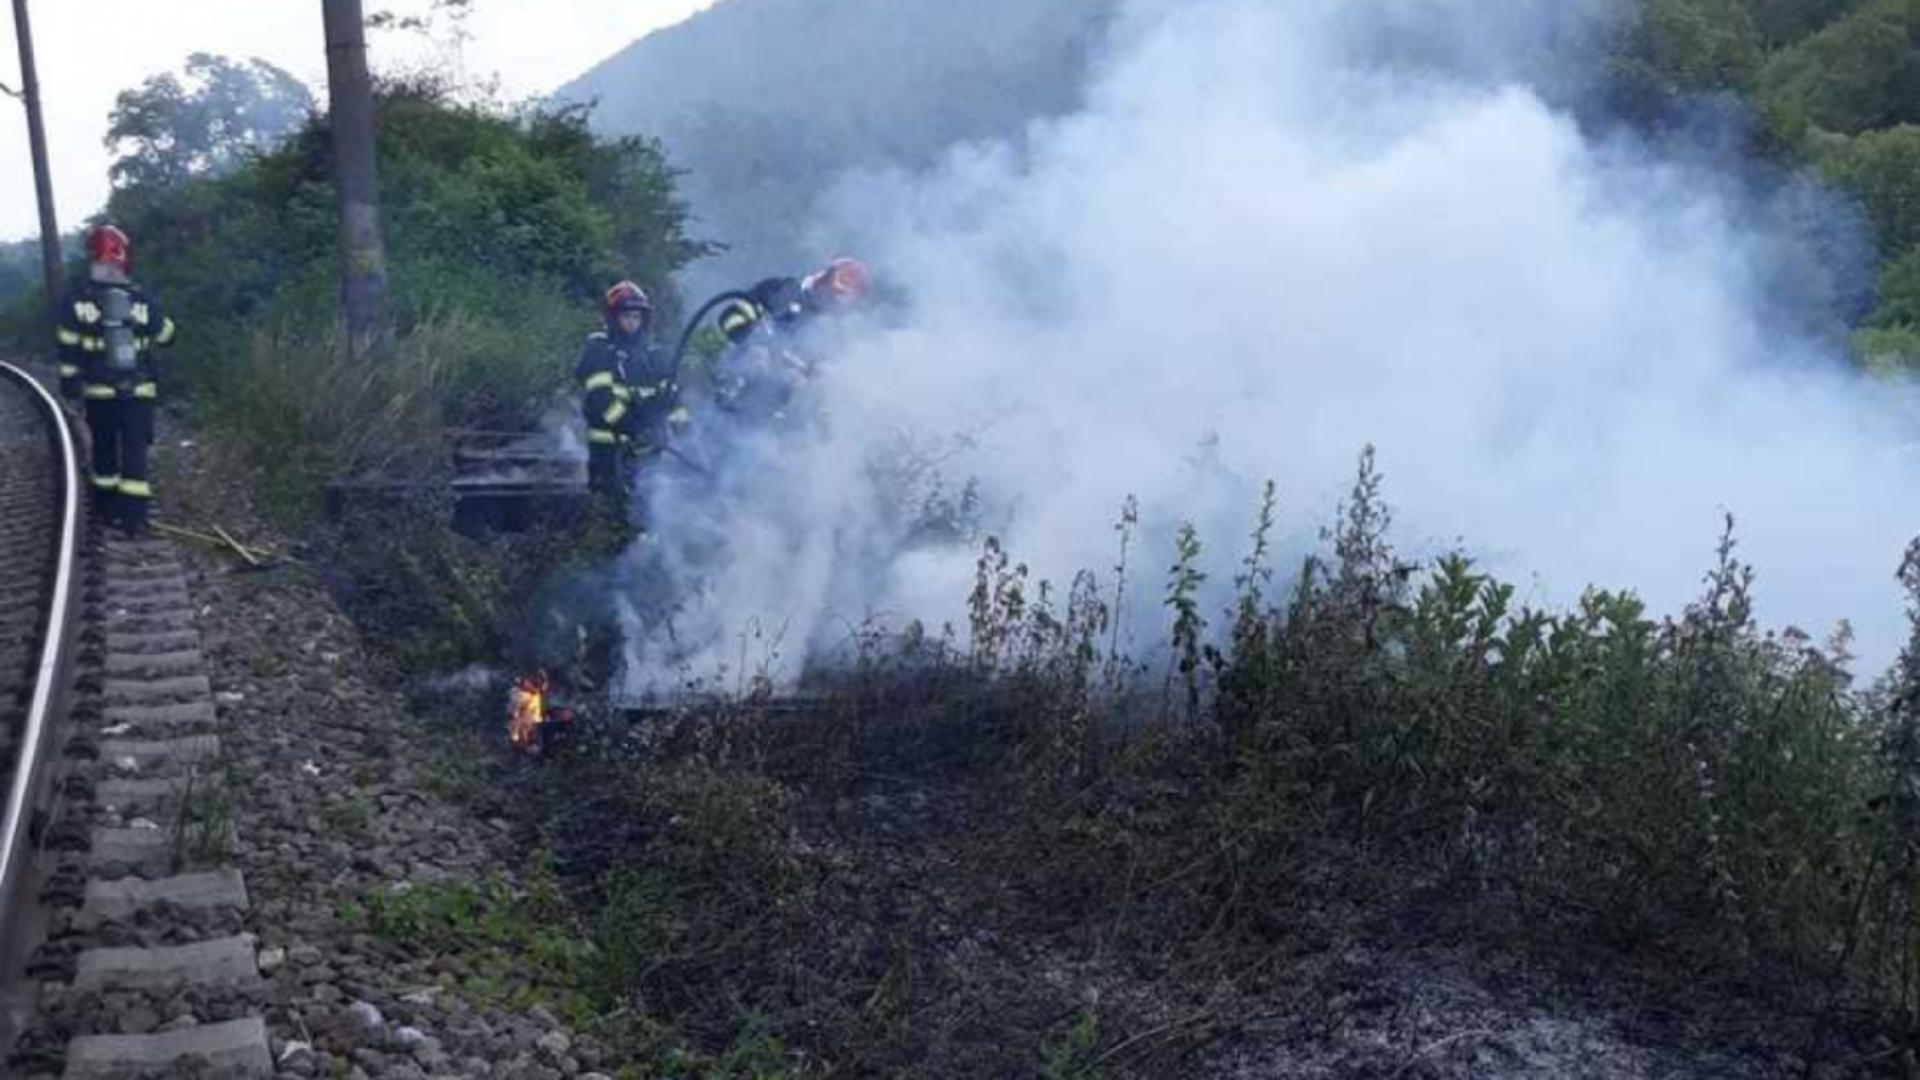 Au fost anunțate întârzieri ale trenurilor din cauza unor incendii de vegetație